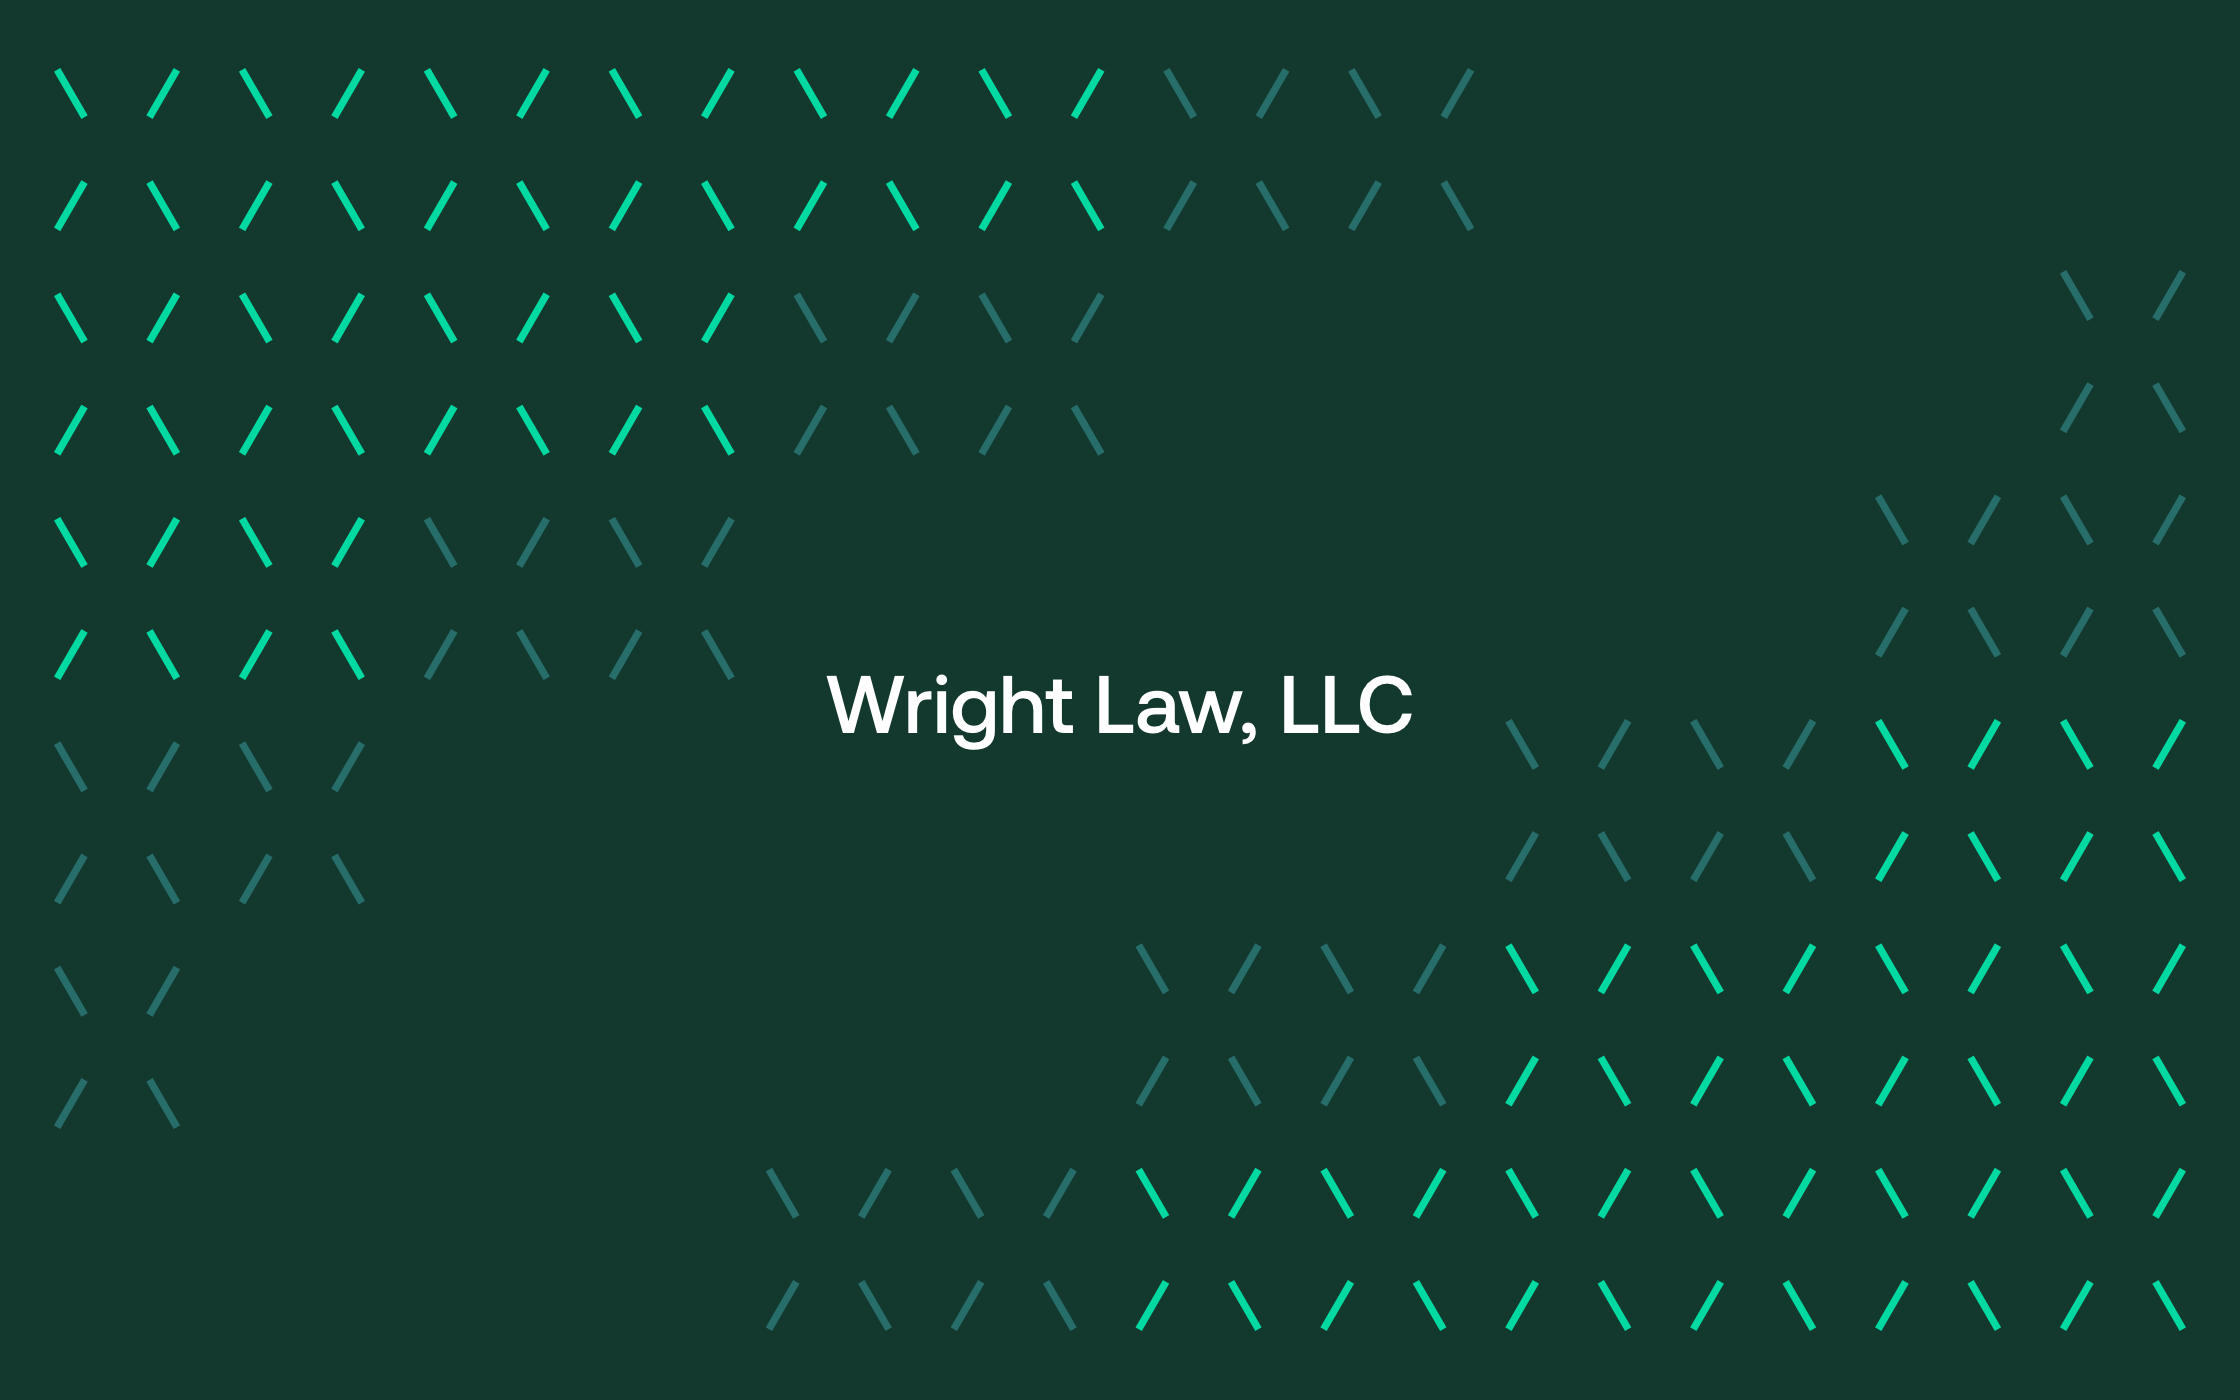 Wright Law, LLC